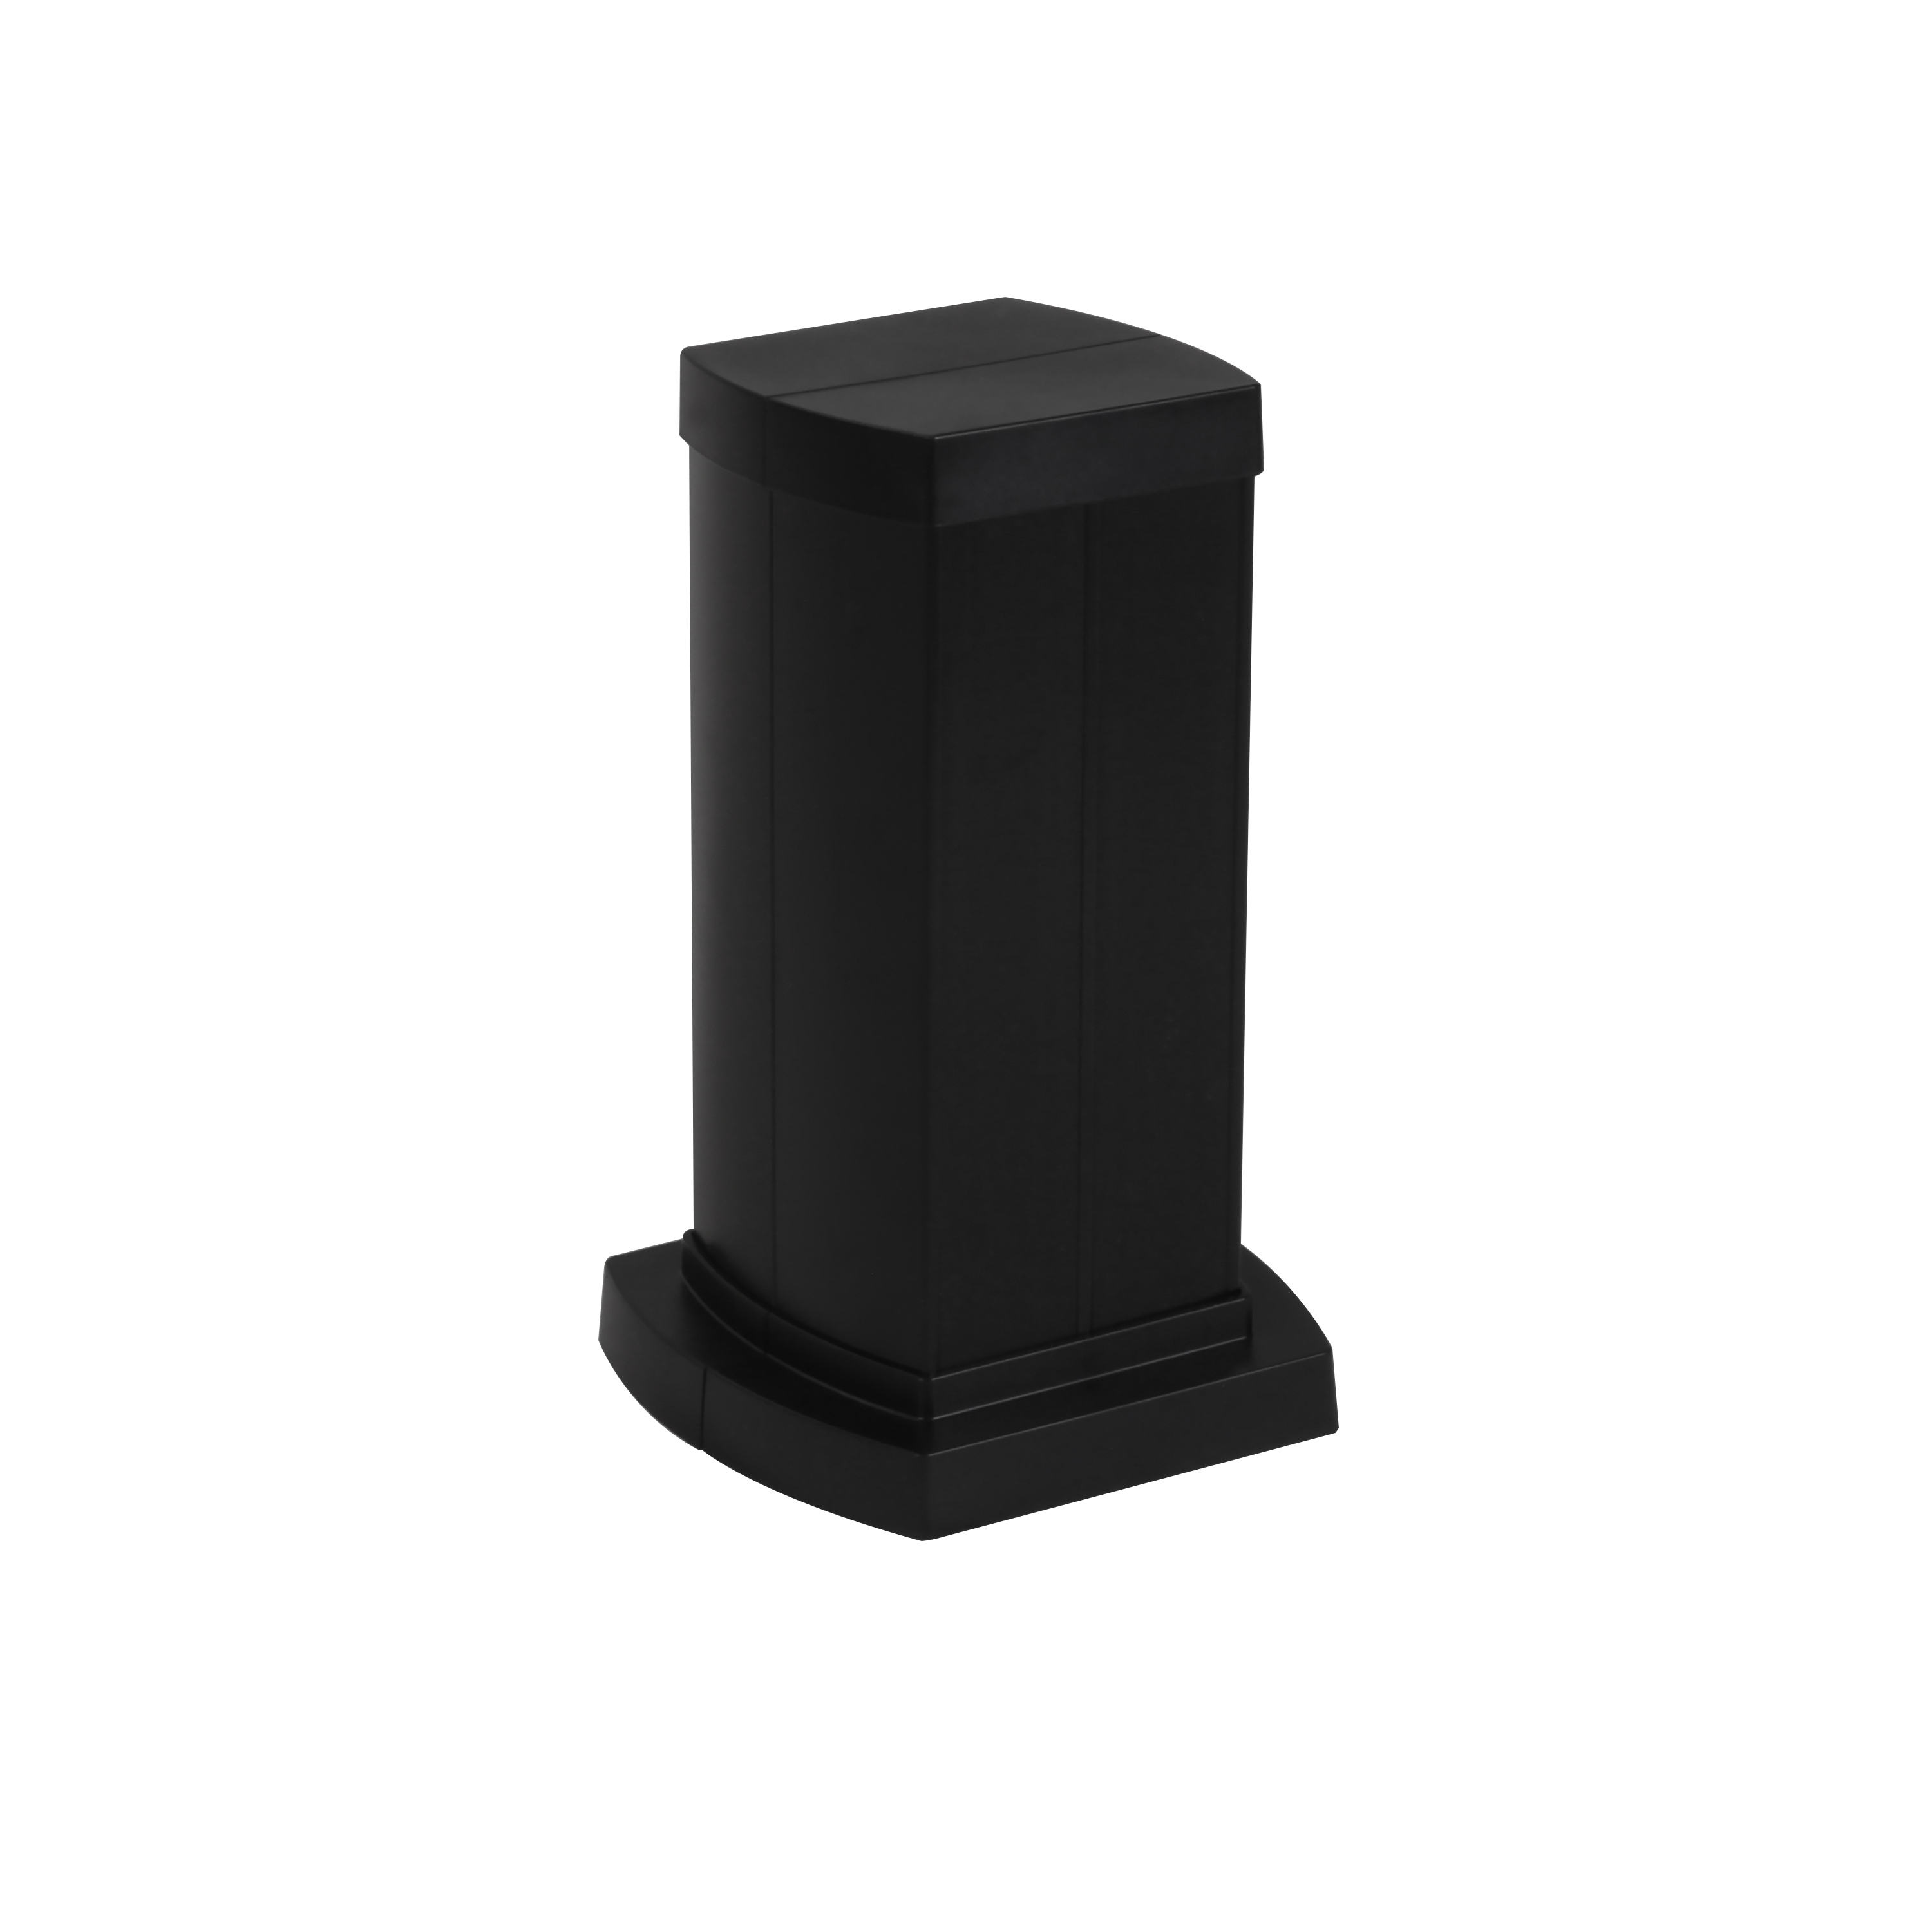 Snap-On мини-колонна алюминиевая с крышкой из пластика 4 секции, высота 0,3 метра, цвет черный 653042 Legrand